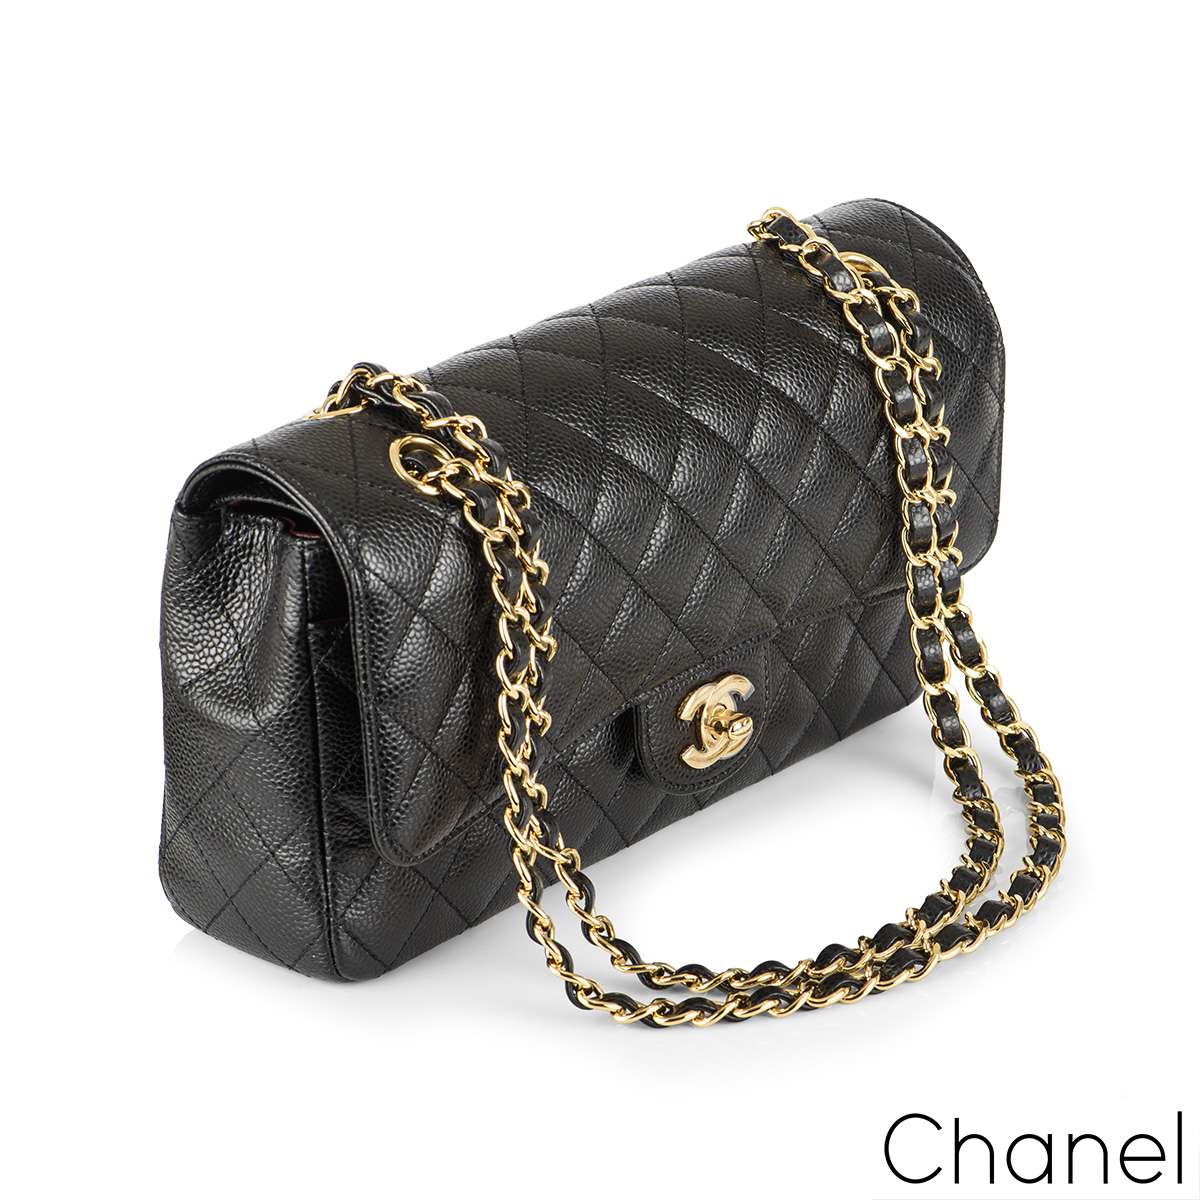 Chanel 2019 Classic Medium Double Flap Bag - Black Shoulder Bags, Handbags  - CHA495104